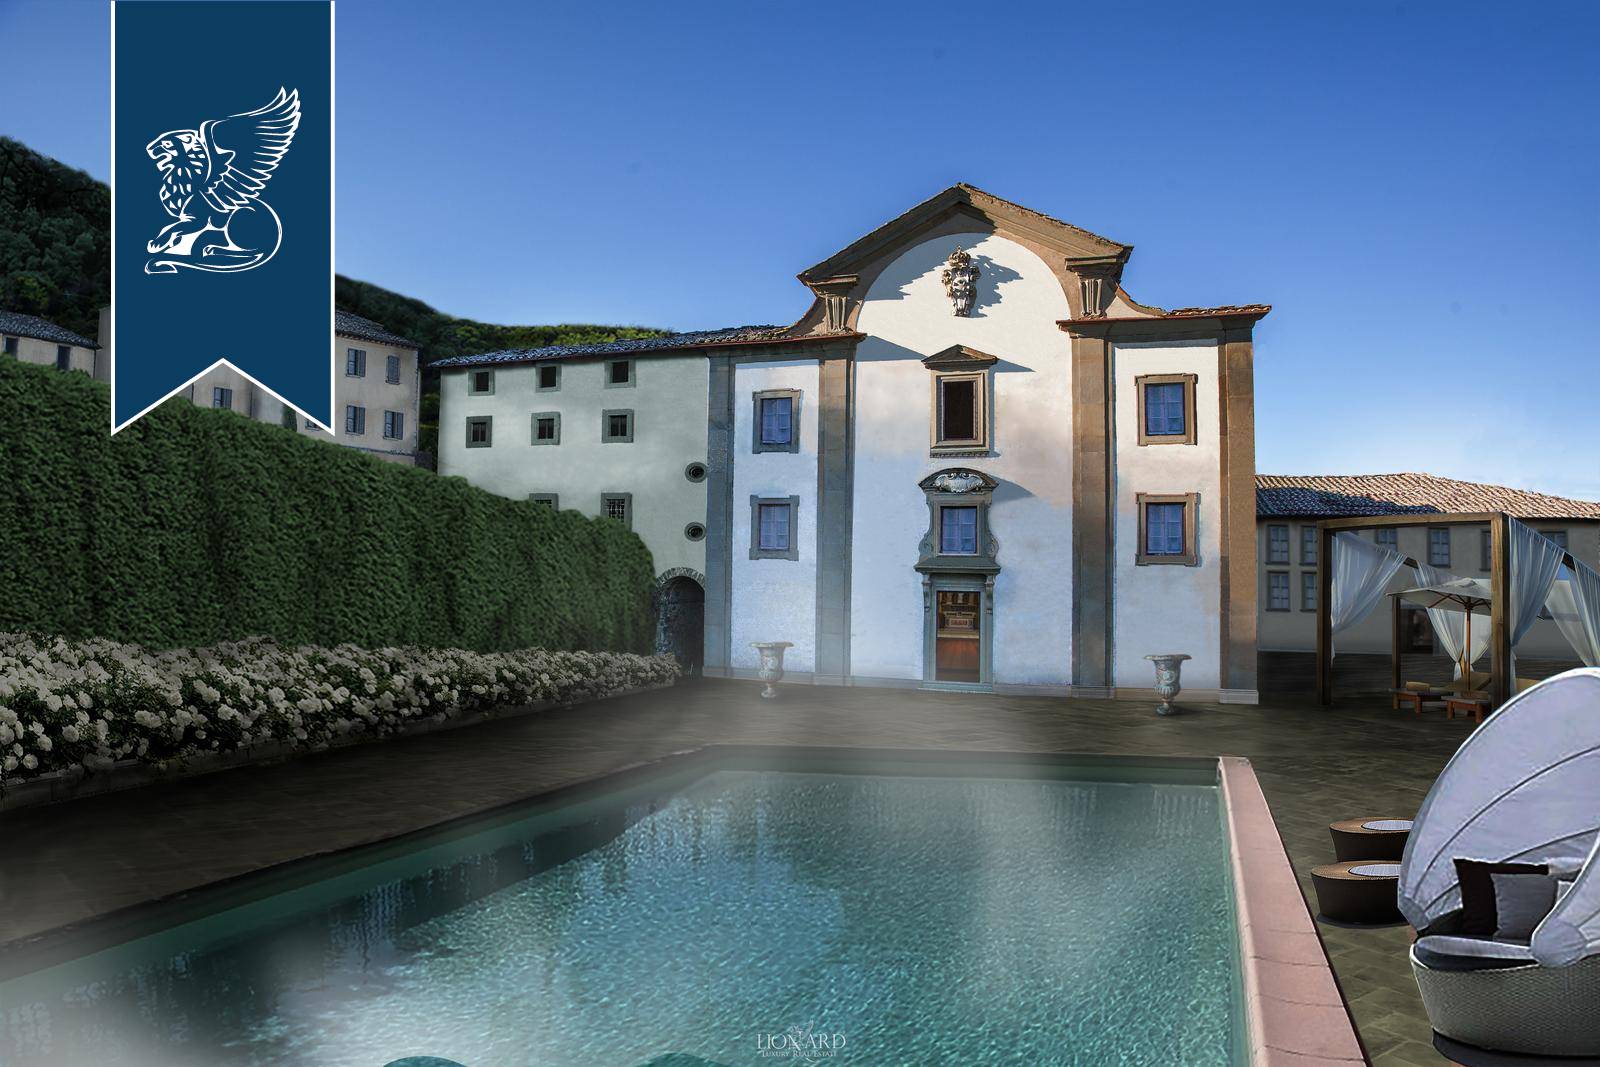 Villa in Vendita a Borgo San Lorenzo: 0 locali, 2500 mq - Foto 3